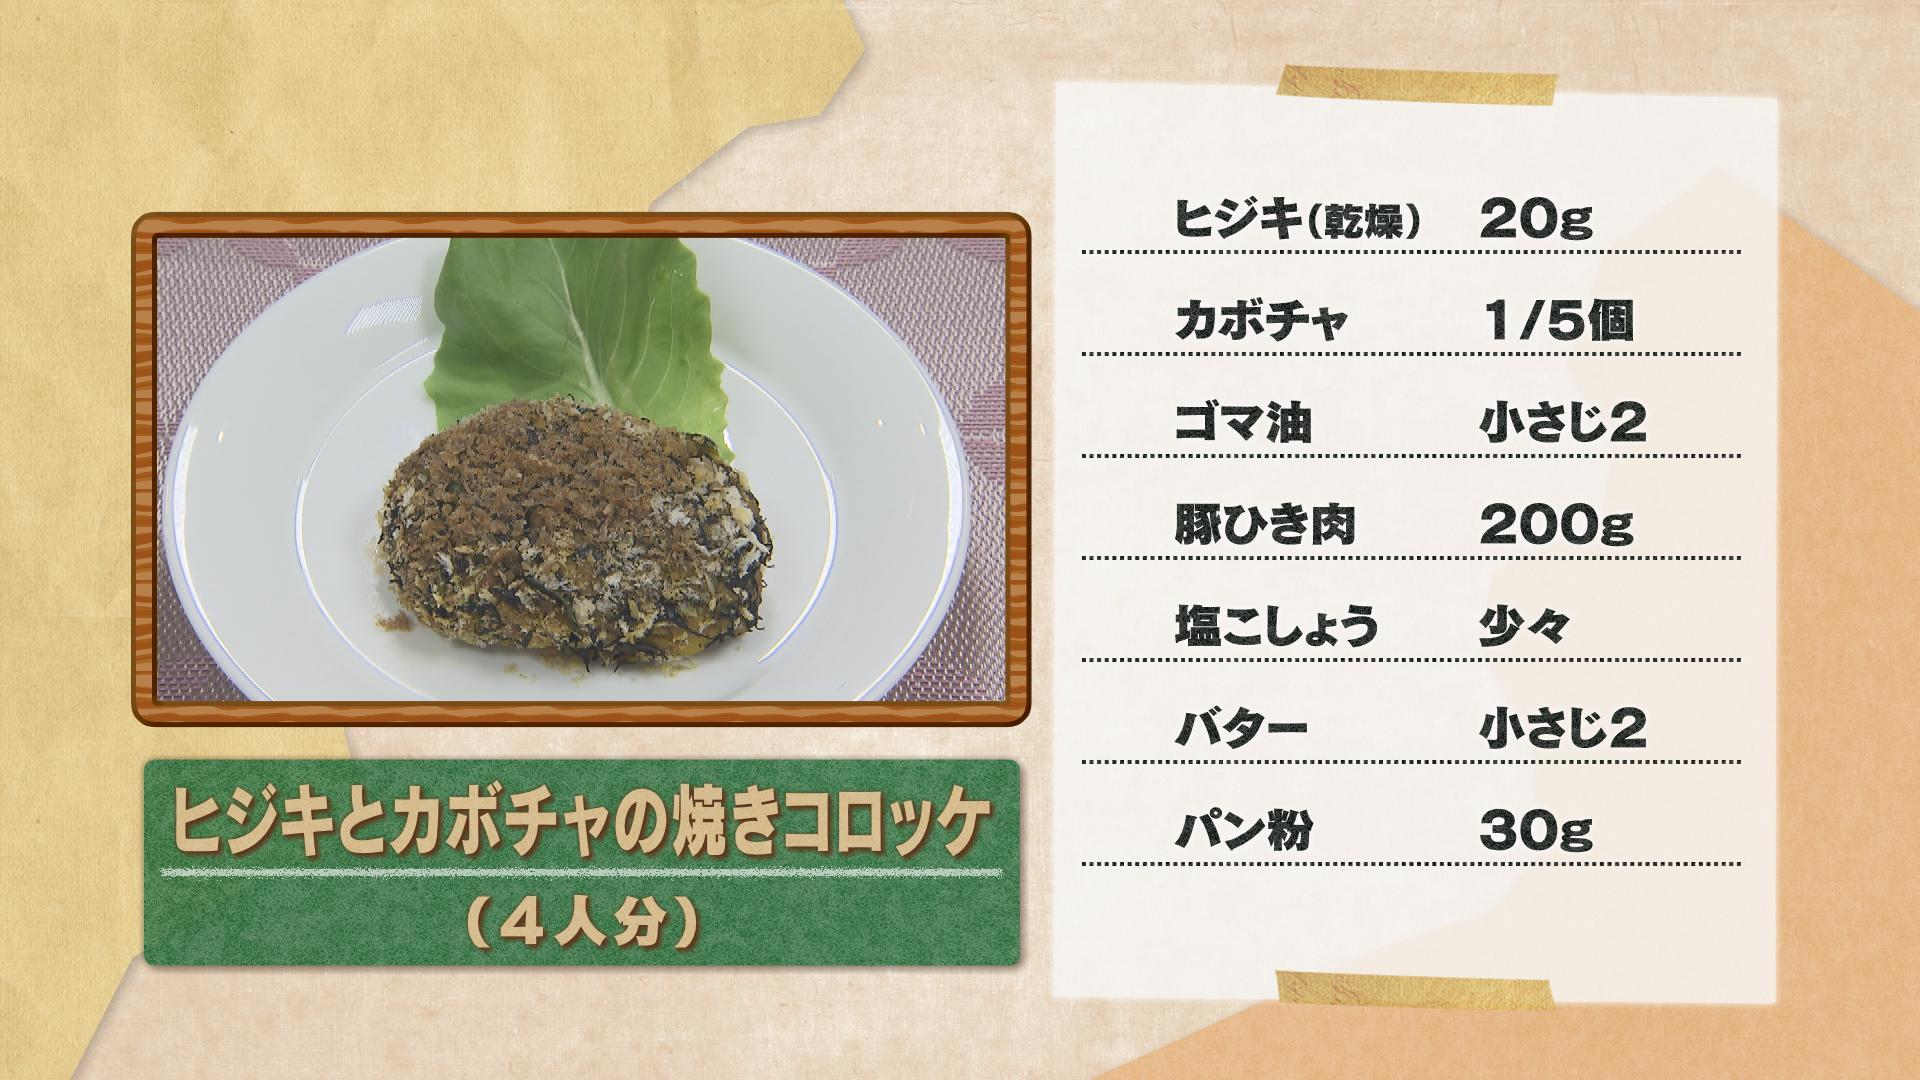 【レシピ】ヒジキとカボチャの焼きコロッケ